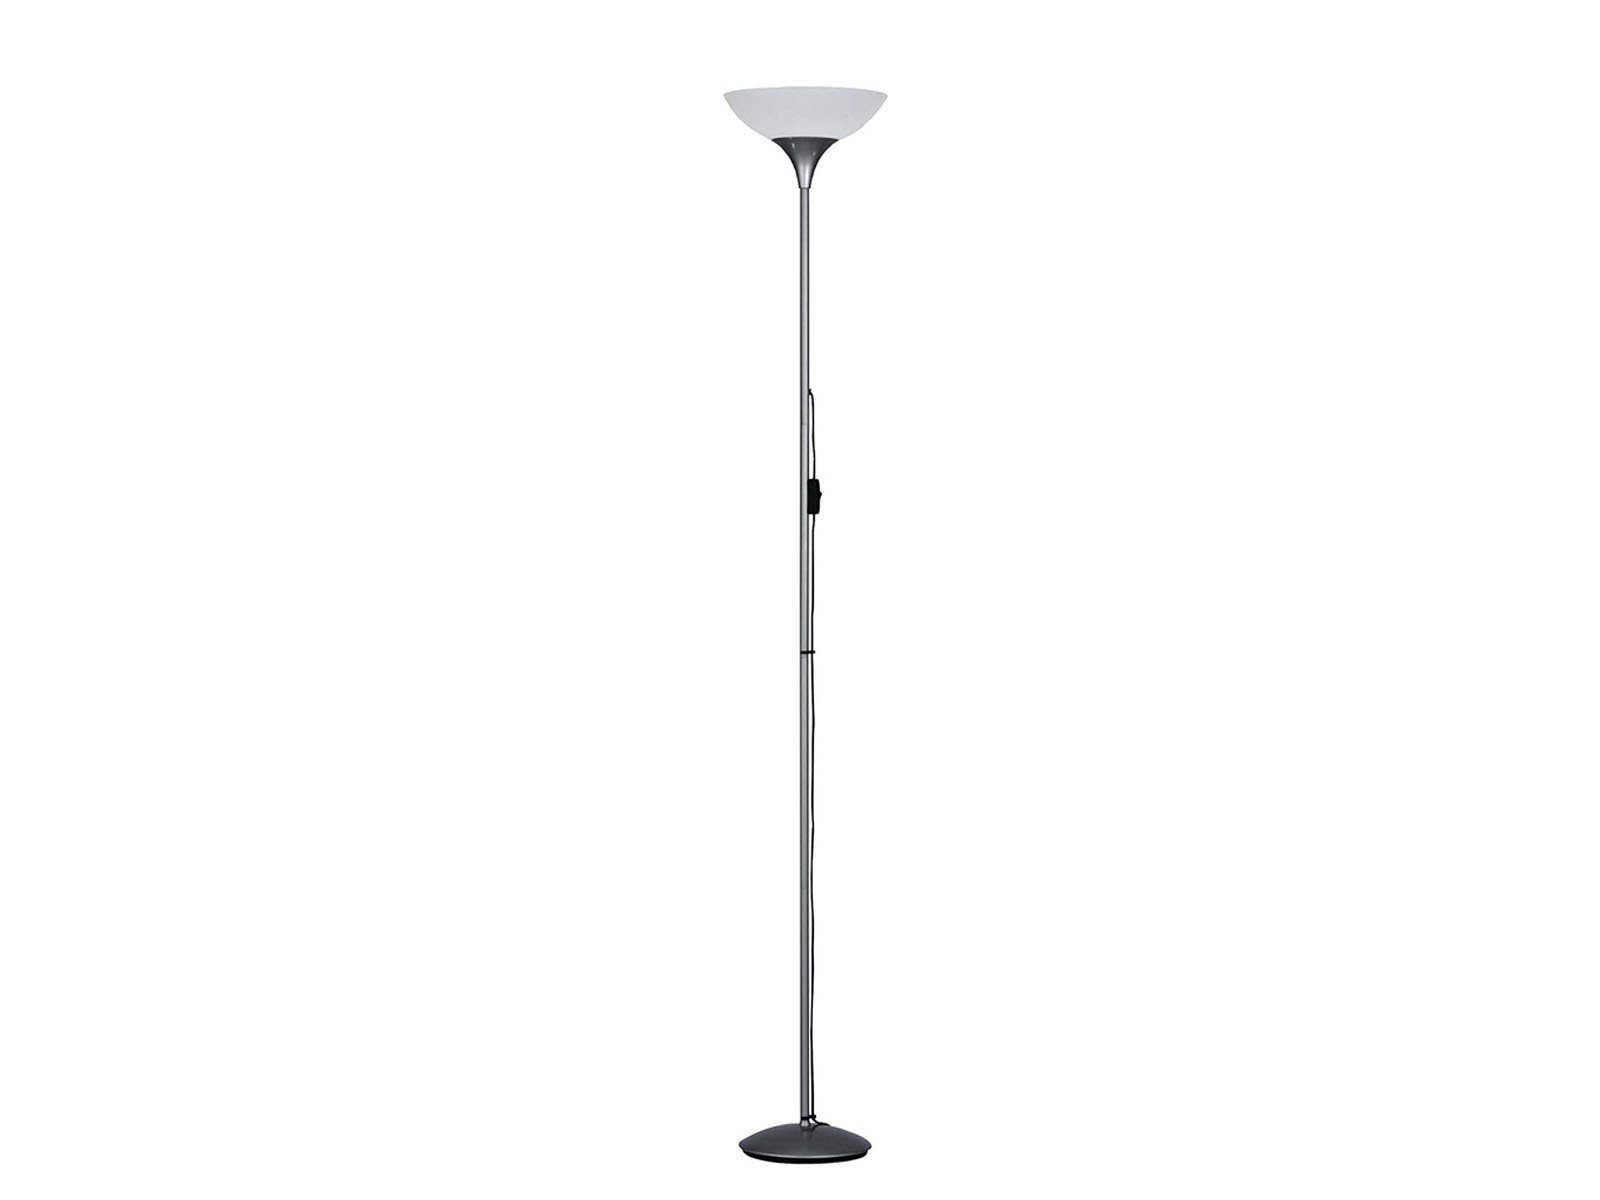 Stehlampe H: Deckenfluter, große Ecke Warmweiß, 180cm wechselbar, für Lampenschirm weiß Designklassiker, meineWunschleuchte LED LED